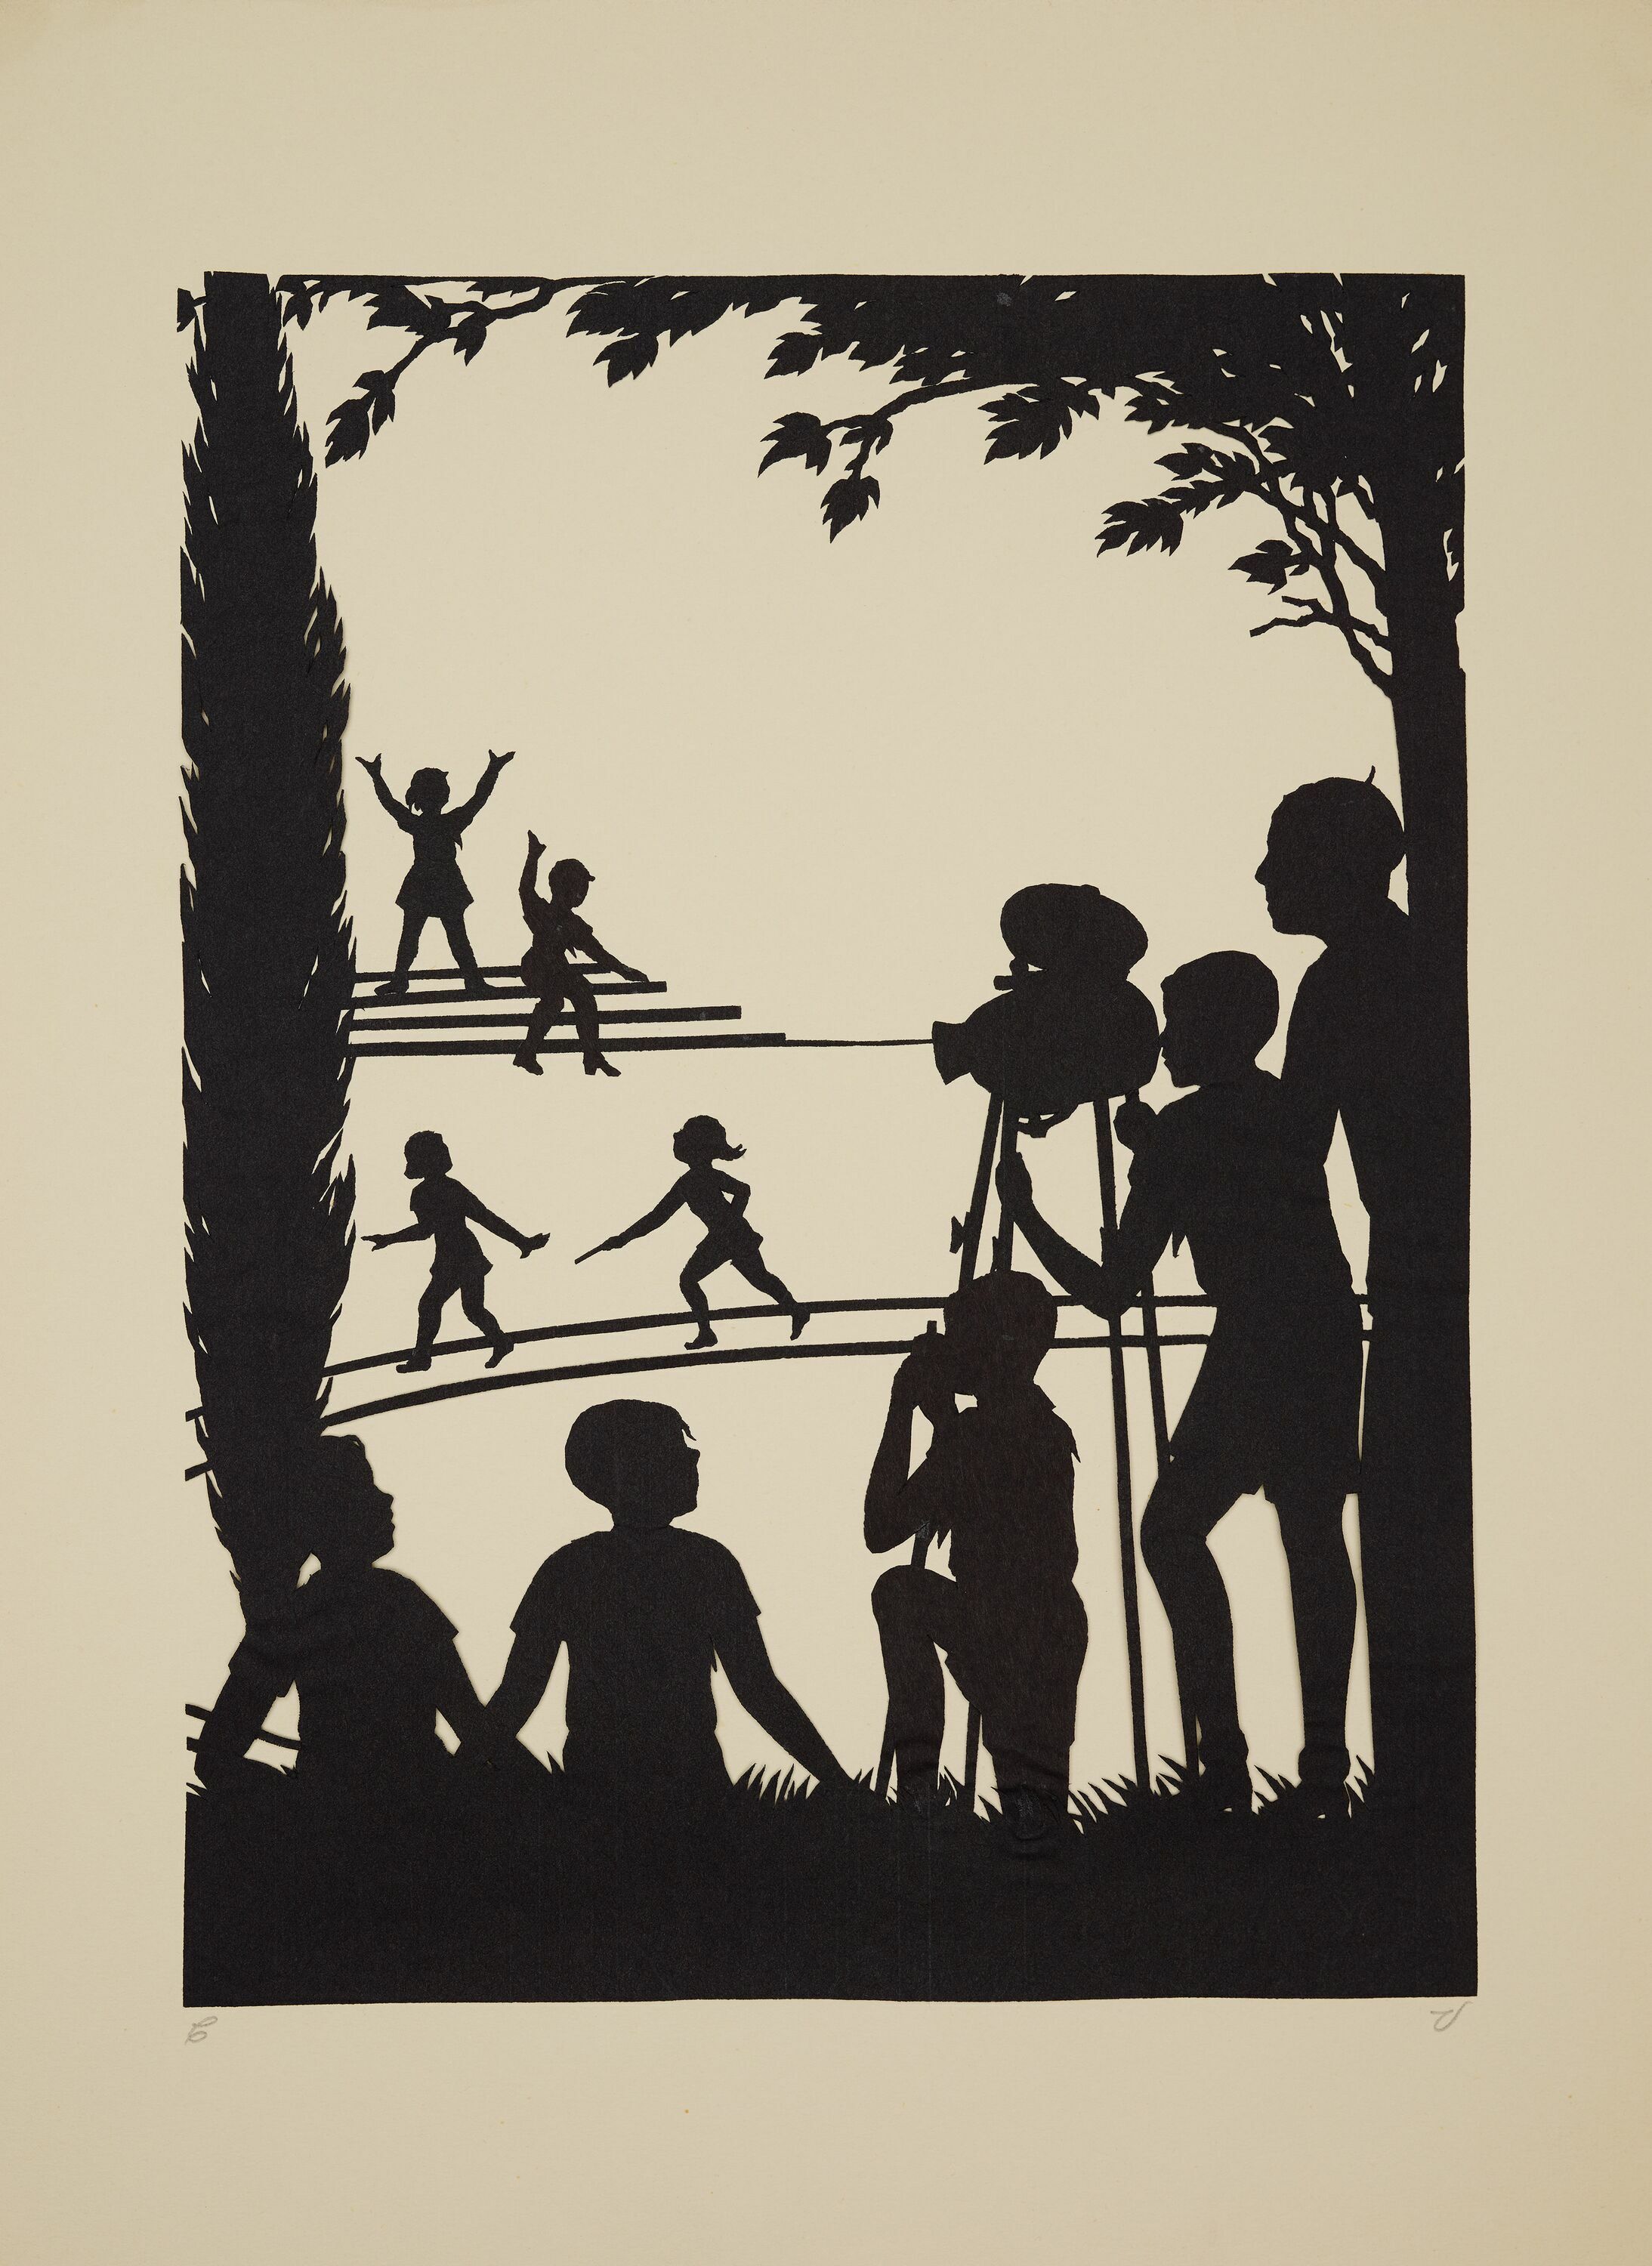 Foto in Vergrößerungsansicht öffnen: Schwarzer Scherenschnitt. Kinder sitzen am Waldesrand und filmen andere rennende Kinder.